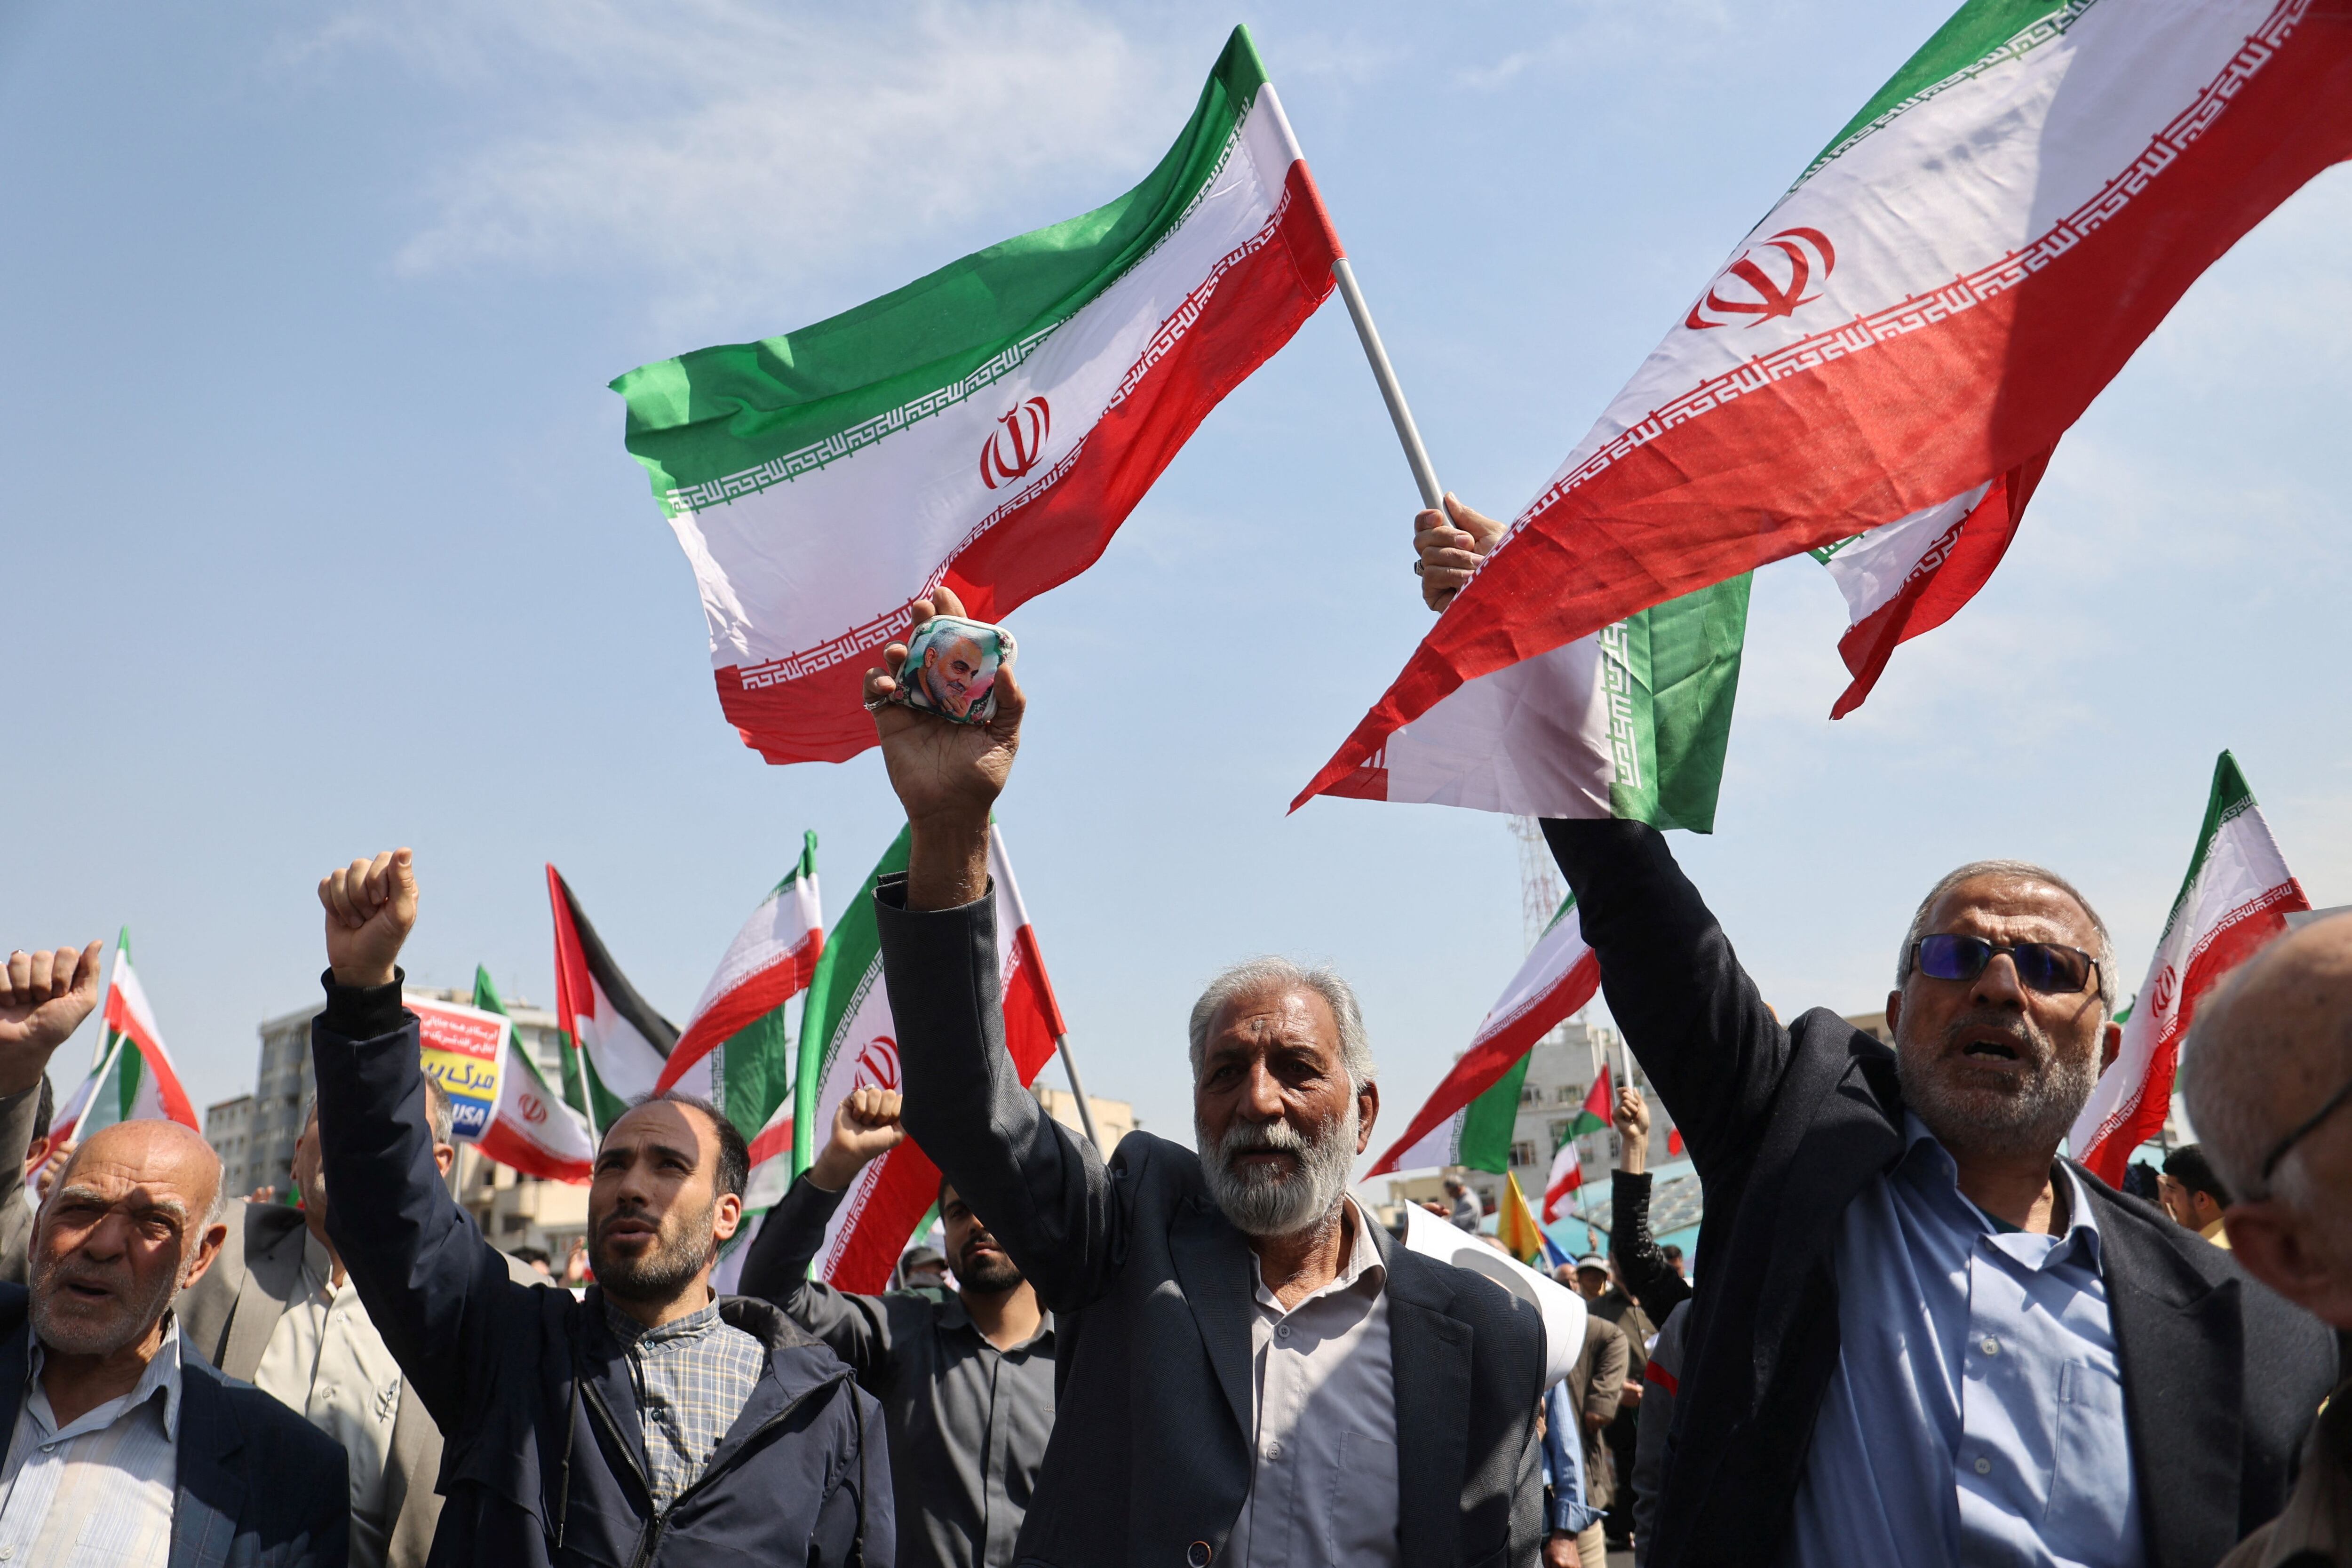 Iraníes en una manifestación antiisraelí en Teherán, Irán (Majid Asgaripour/WANA (West Asia News Agency) via REUTERS)